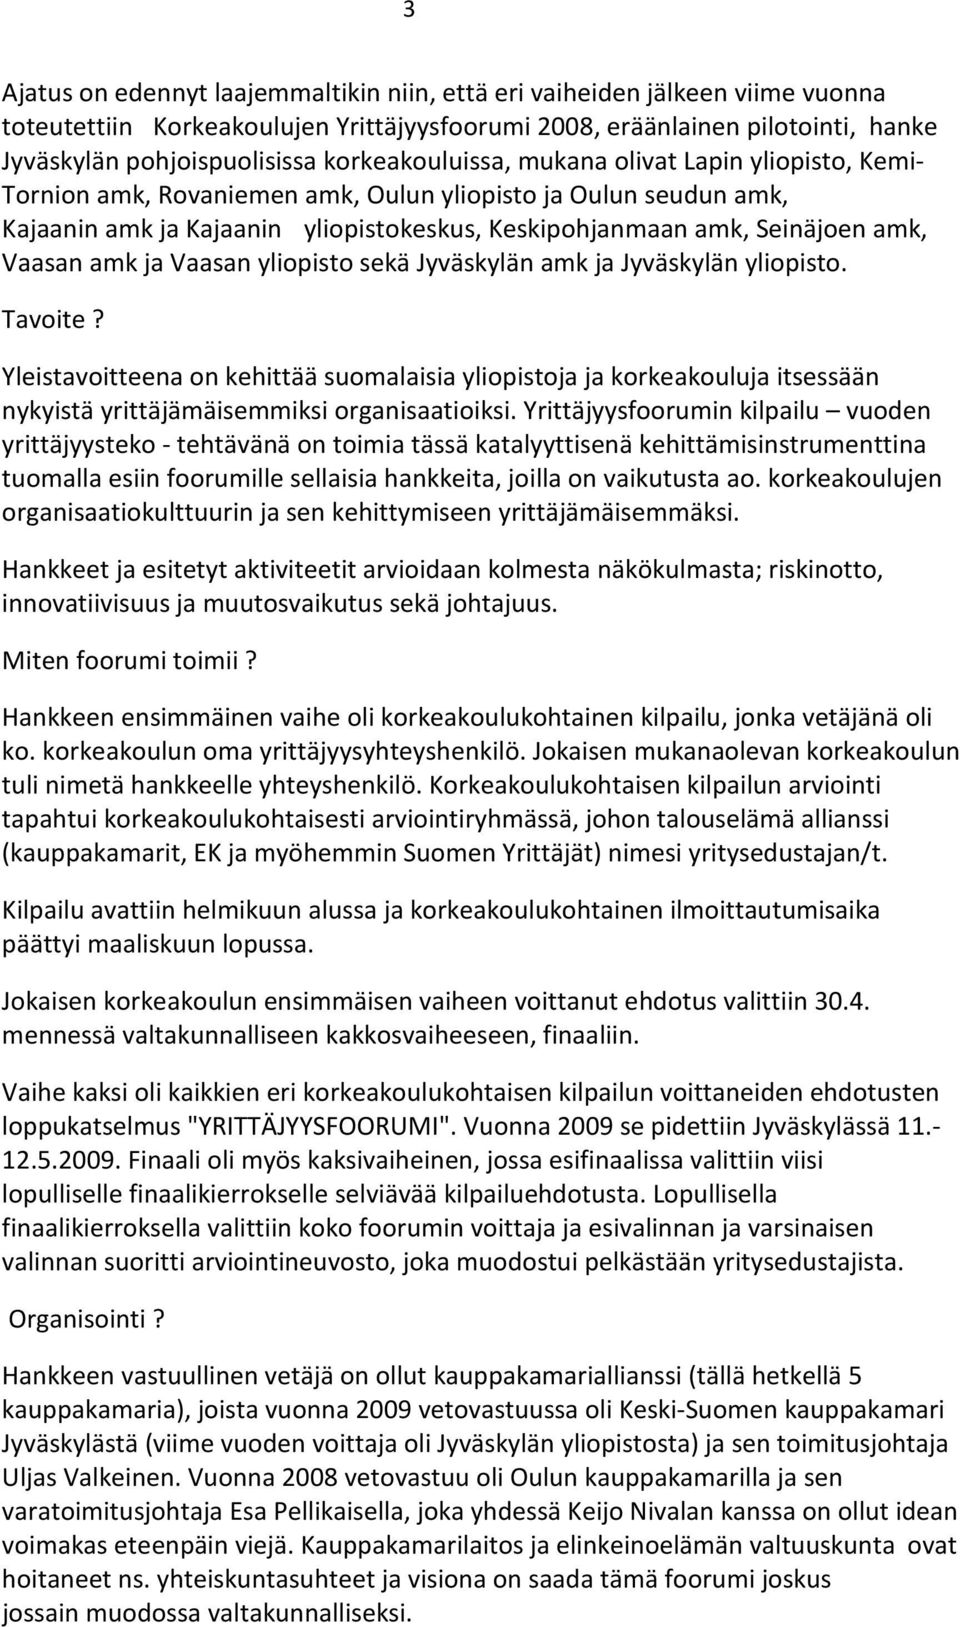 Vaasan amk ja Vaasan yliopisto sekä Jyväskylän amk ja Jyväskylän yliopisto. Tavoite?